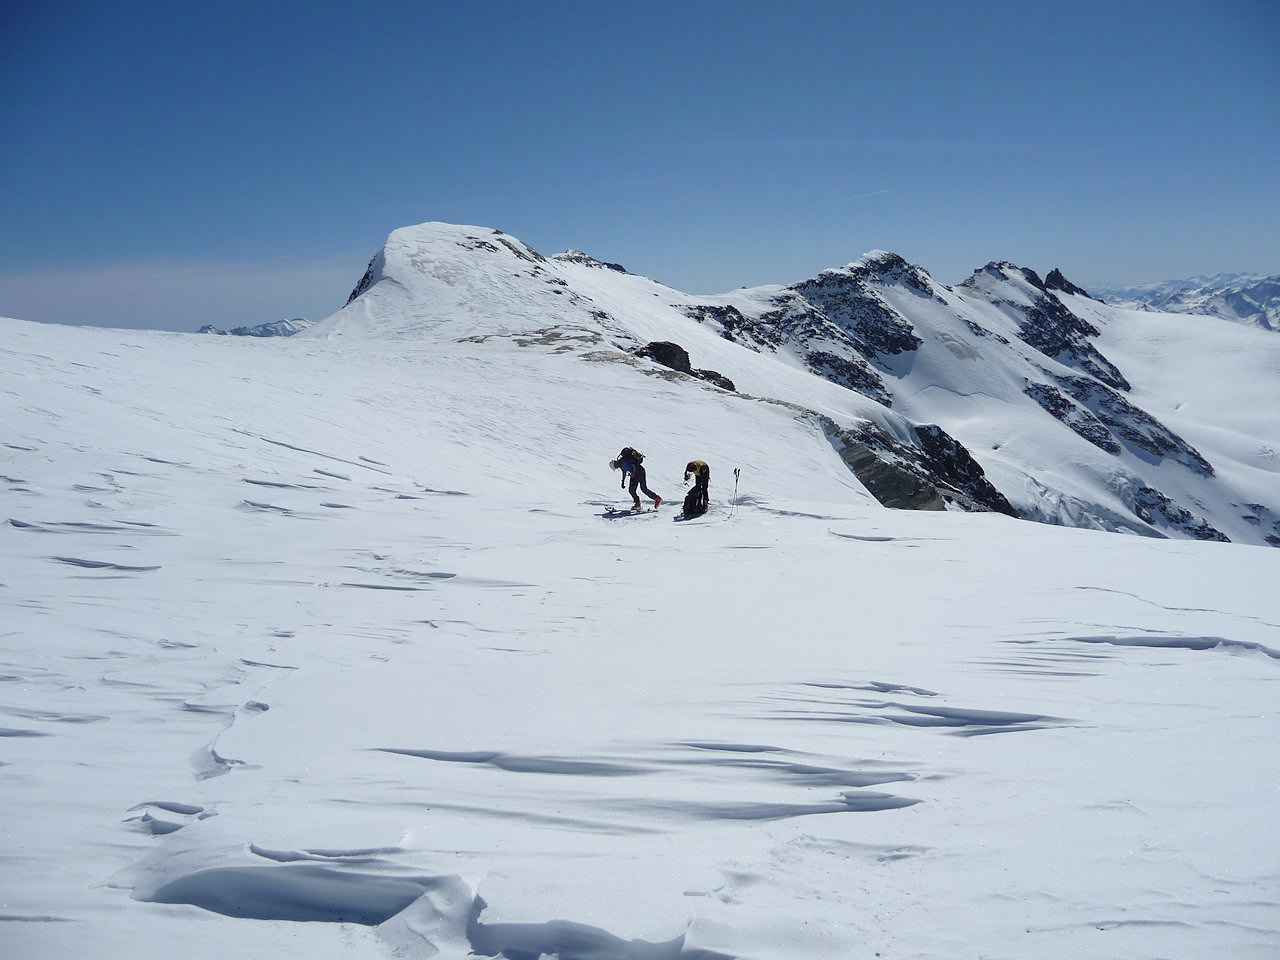 Sur la calotte glaciaire : Nous rechaussons les skis avant de poursuivre vers le sommet